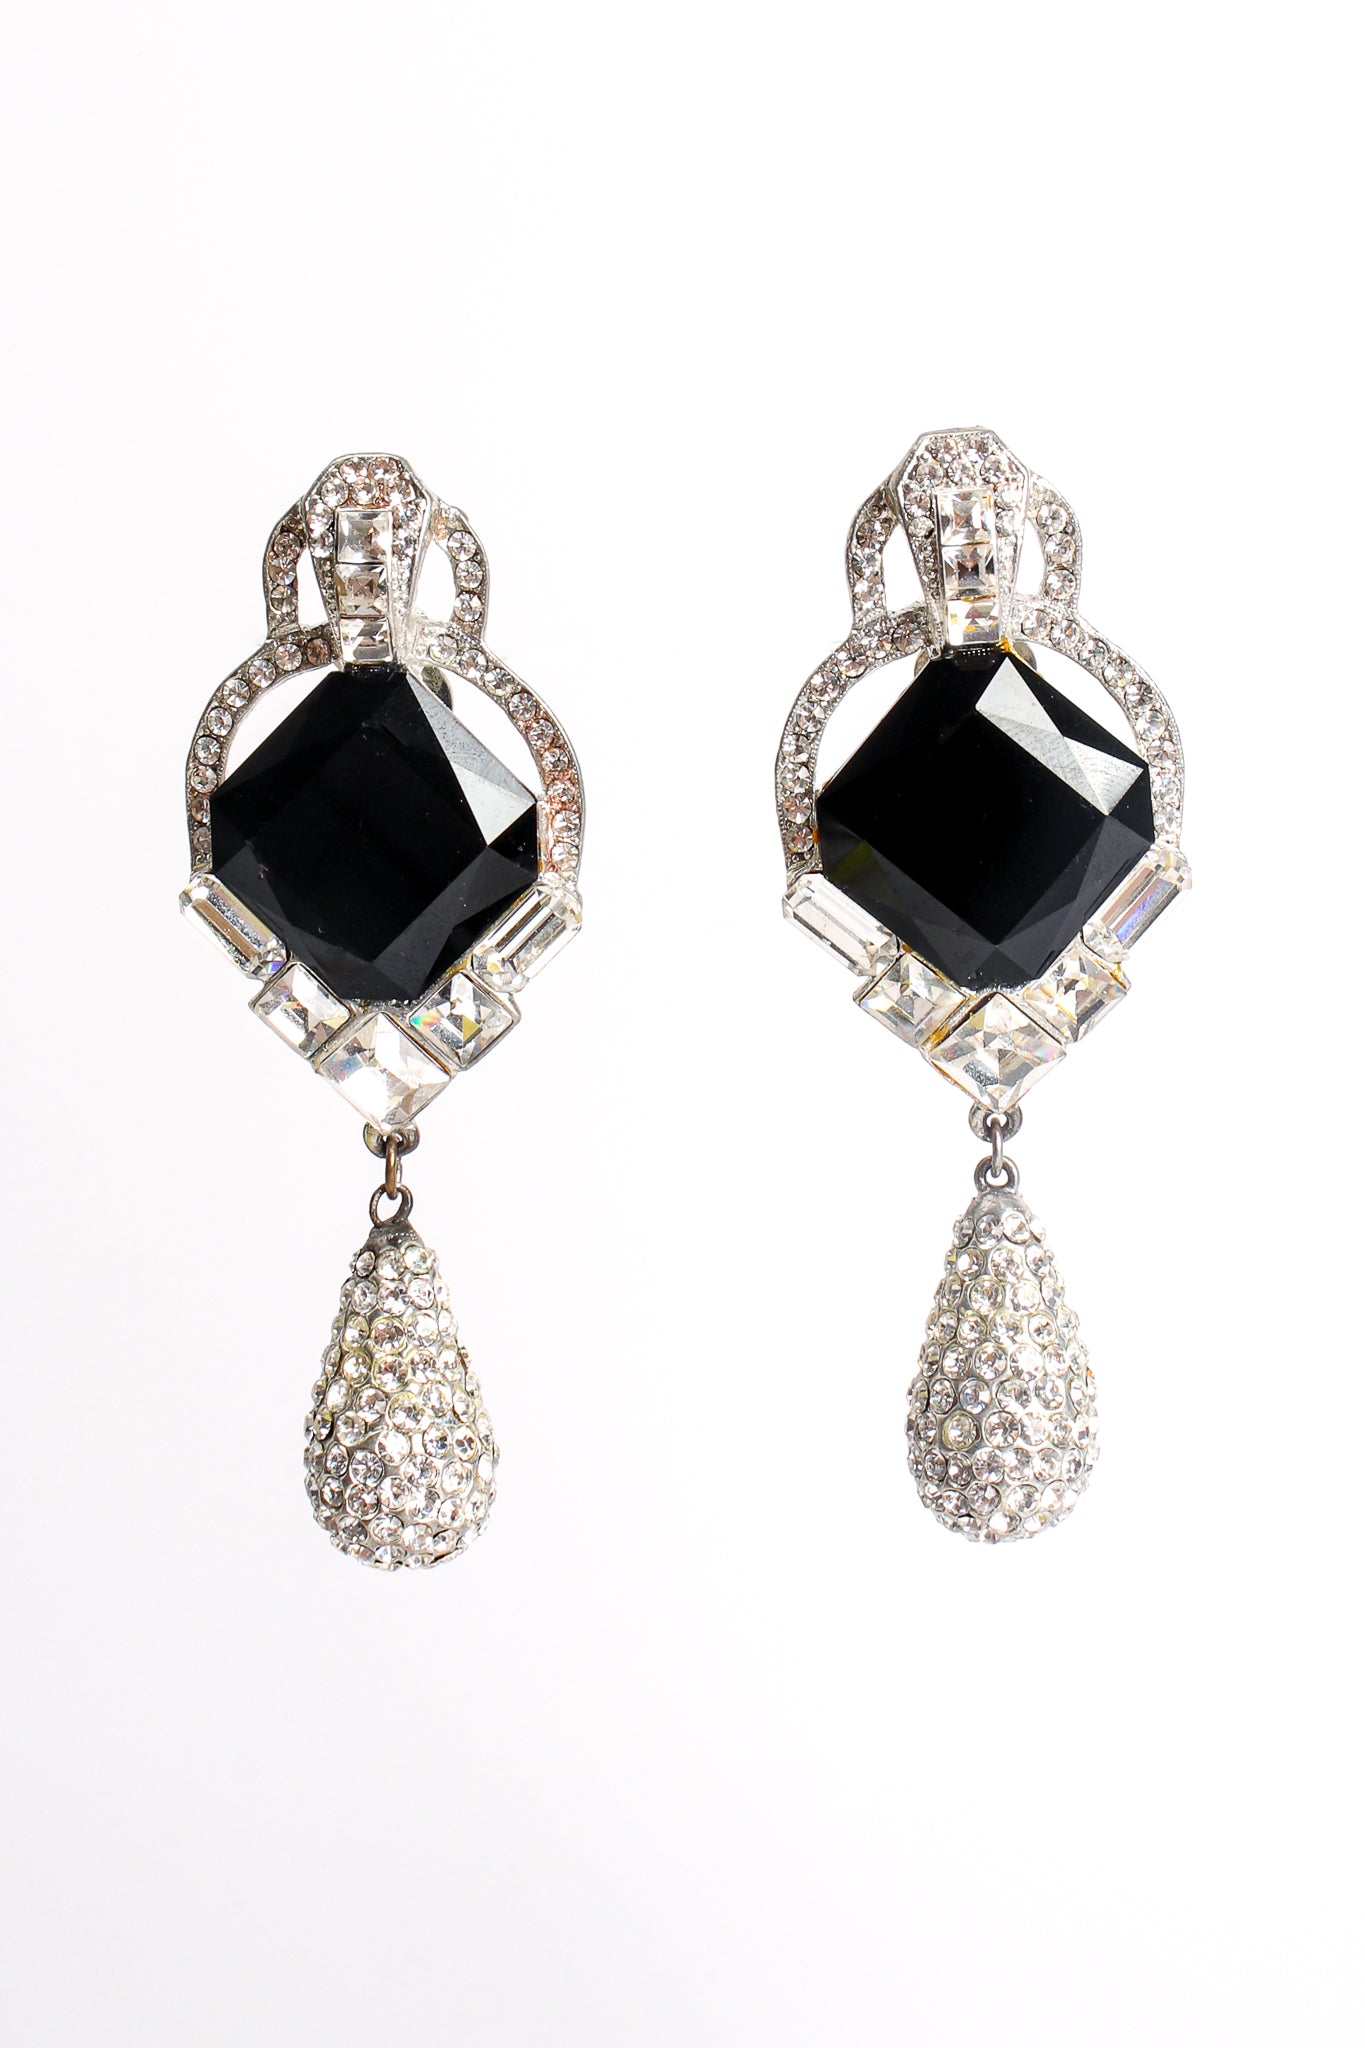 Vintage Beveled Crystal and Rhinestone Teardrop Earrings at Recess Los Angeles